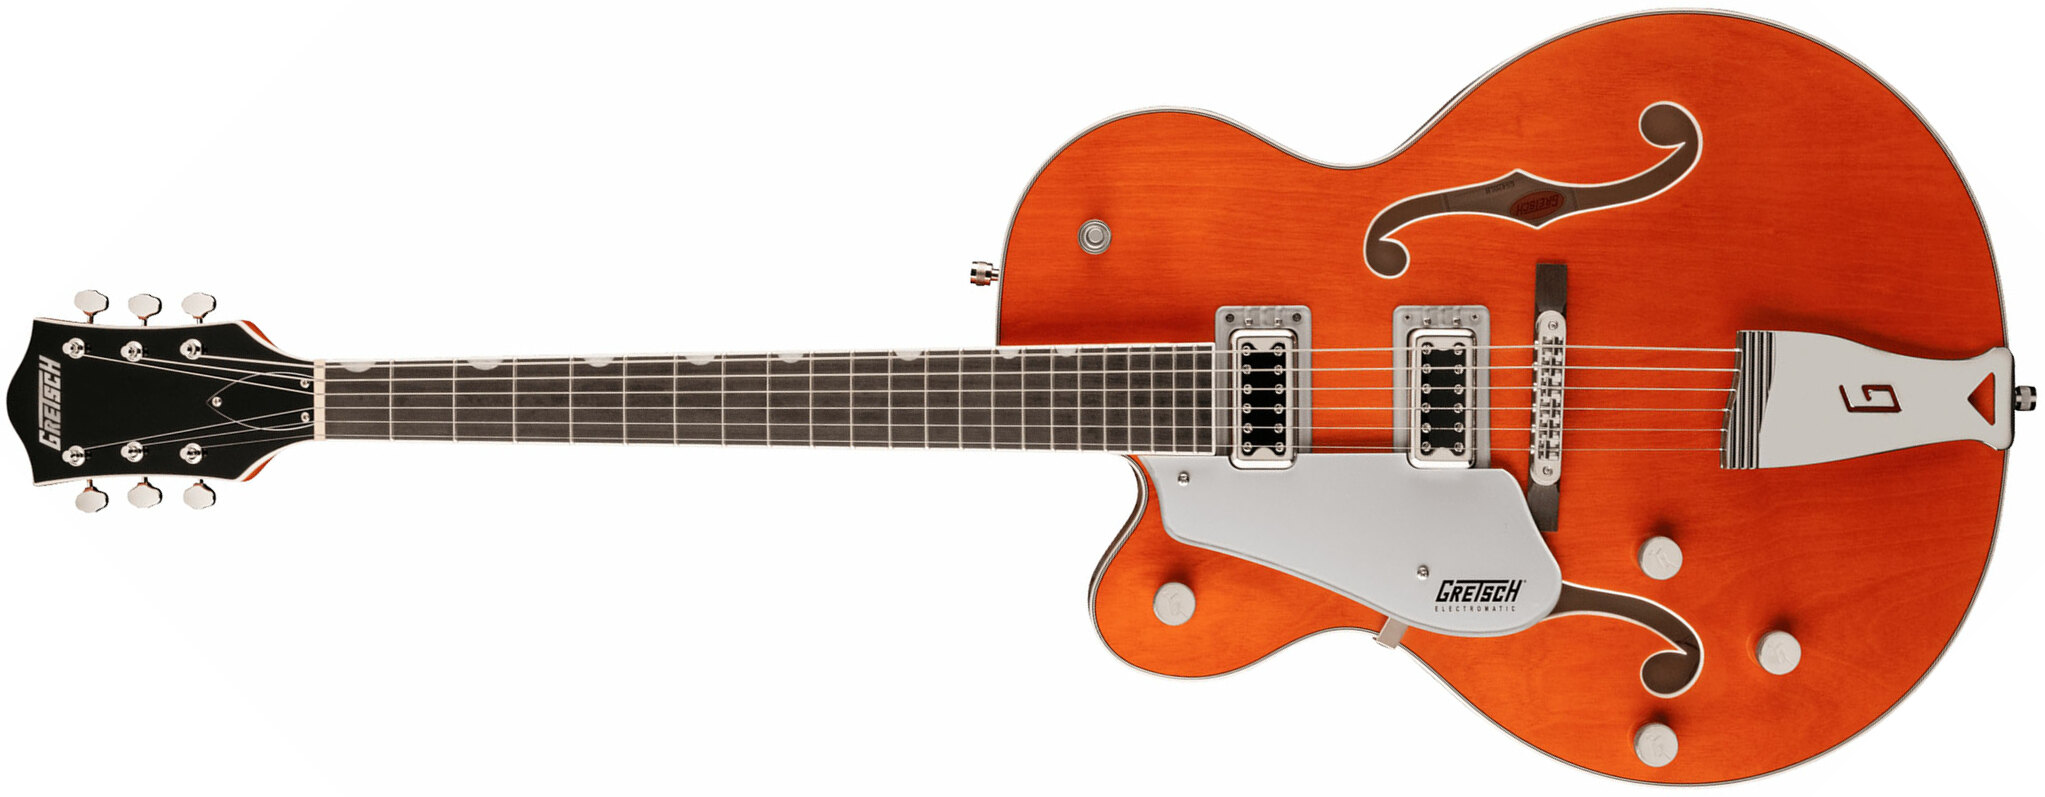 Gretsch G5420lh Classic Electromatic Hollow Body Gaucher Hh Ht Lau - Orange Stain - E-Gitarre für Linkshänder - Main picture